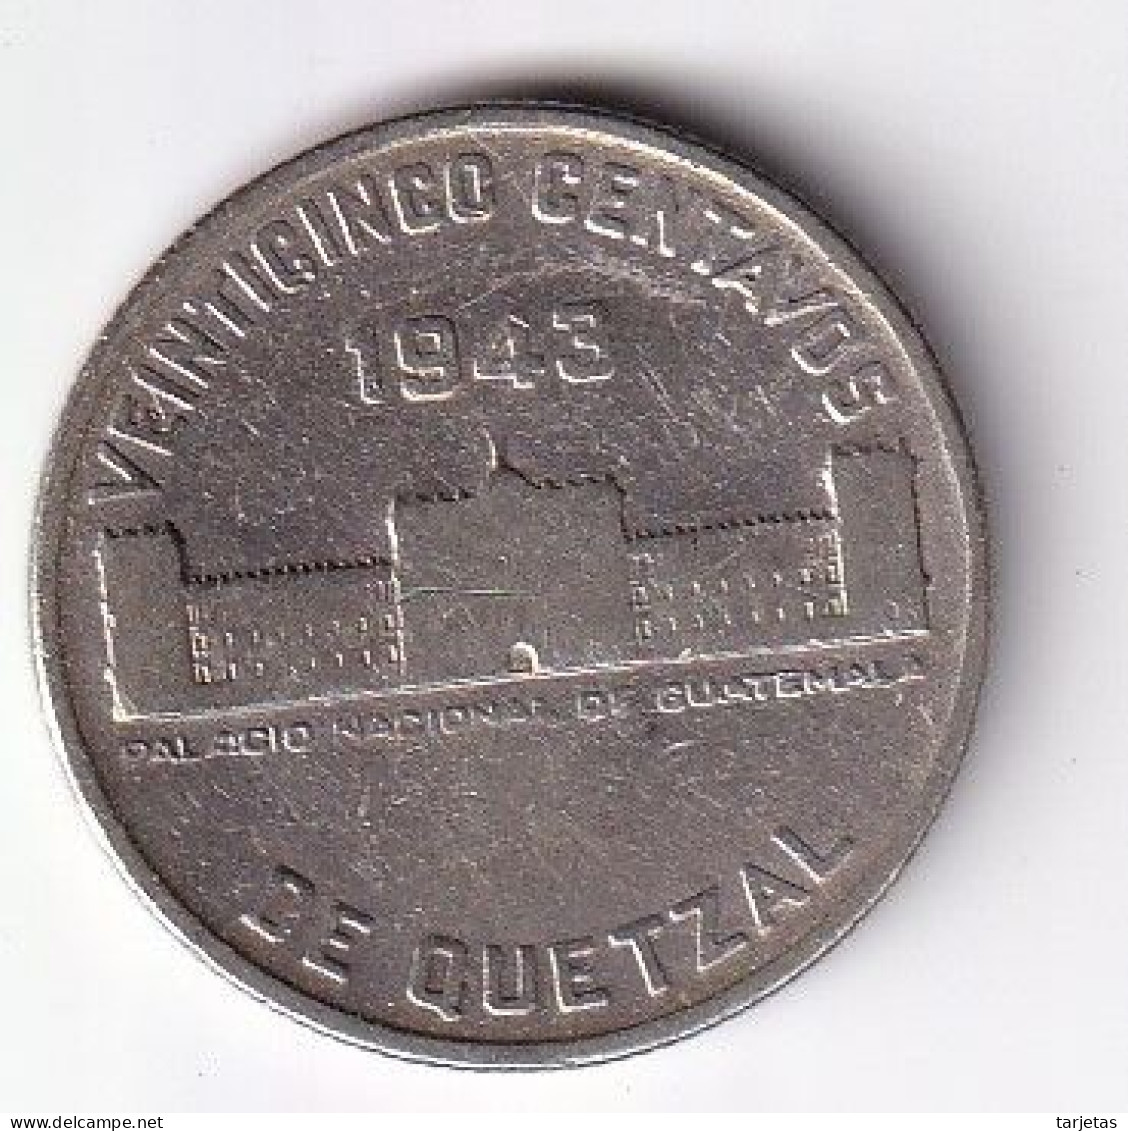 MONEDA DE PLATA DE GUATEMALA DE 25 CENTAVOS DEL AÑO 1943  (COIN) SILVER,ARGENT. - Guatemala